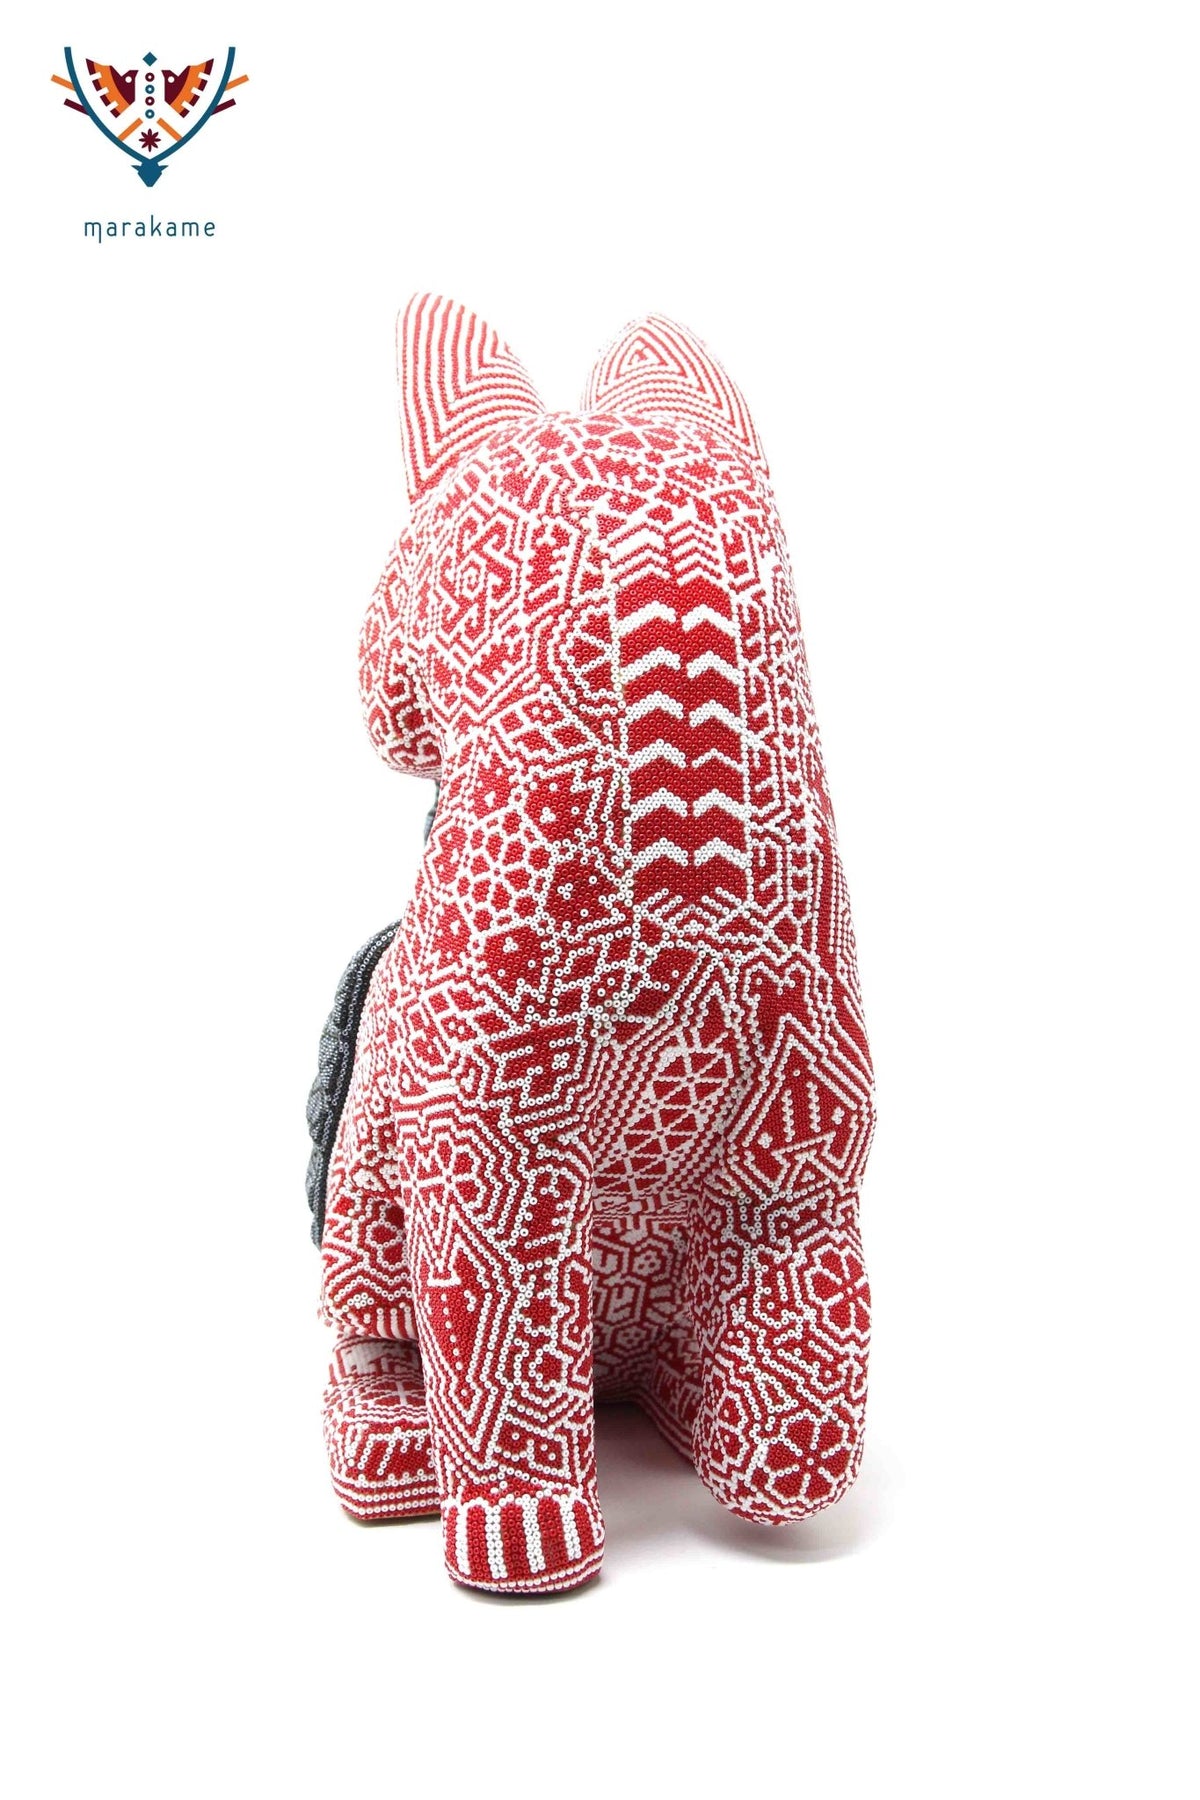 Escultura Arte Huichol - Perro armadillo - Arte Huichol - Marakame